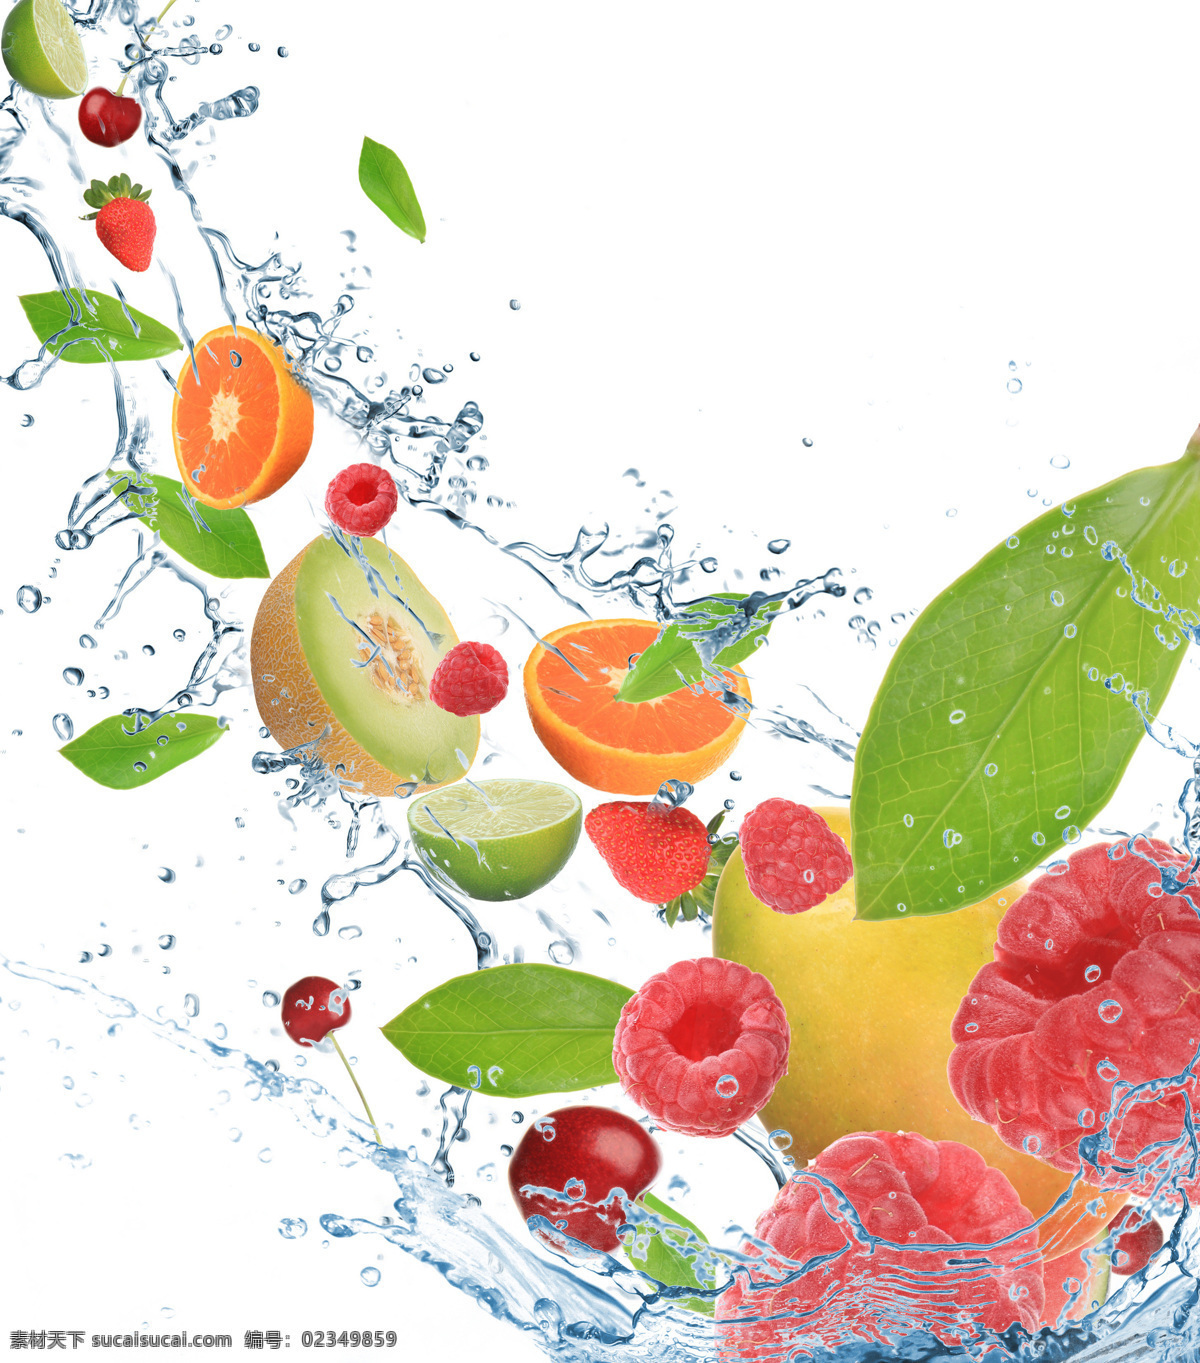 水中 水果 特效 水中水果 水中草莓 草莓 鲜橙 桔子 桔片 梨子 水果图片 餐饮美食